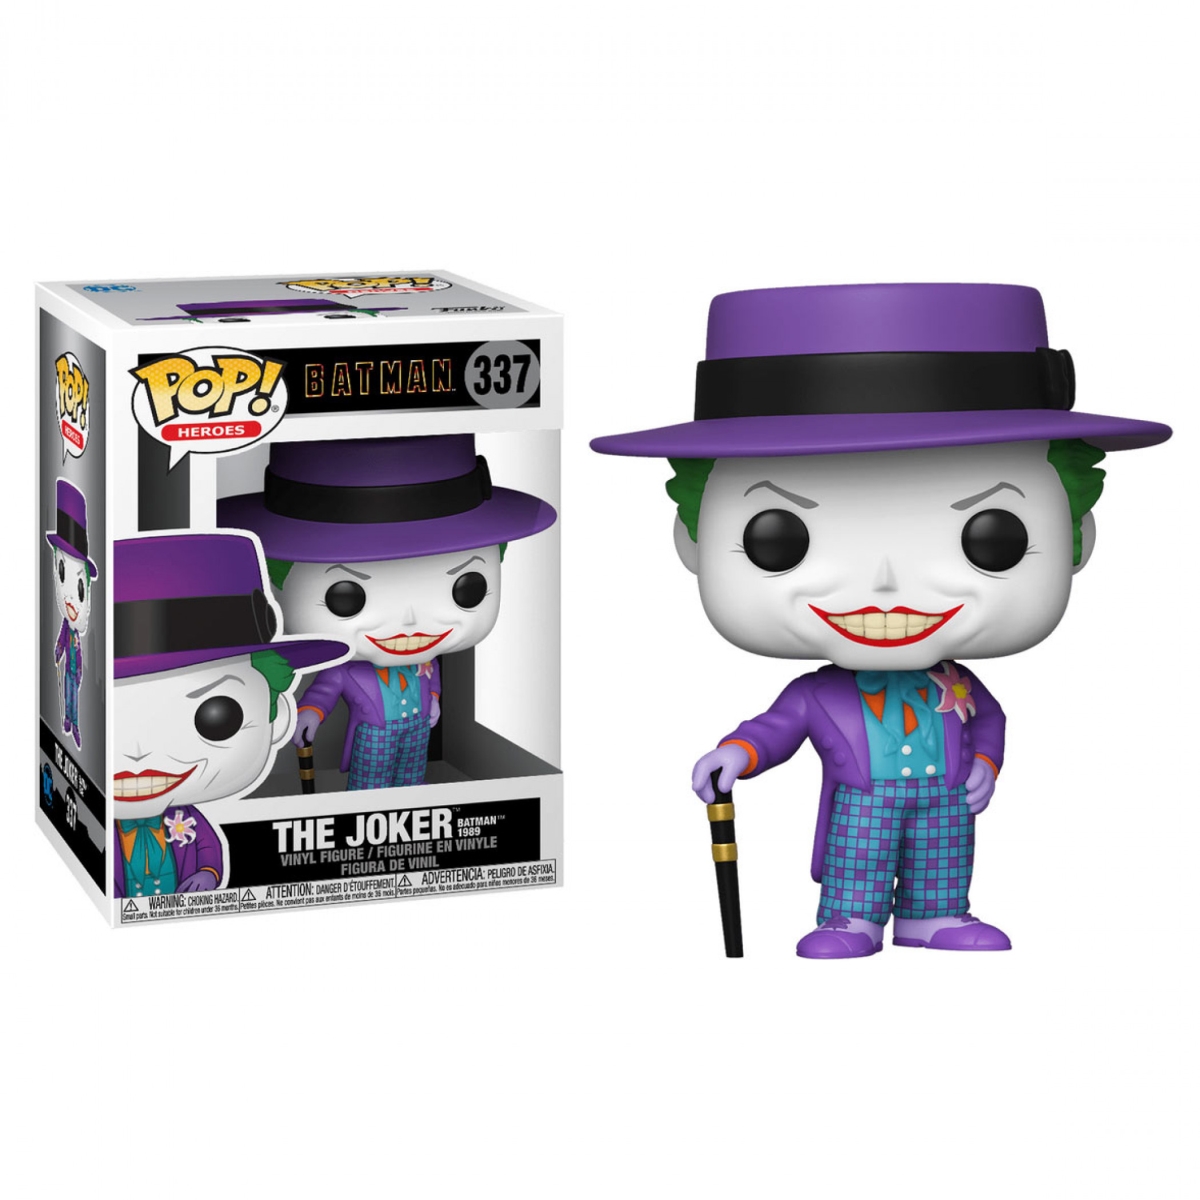 Picture of Joker 803778 Batman 1989 Movie - Joker with Hat Funko Pop Figure